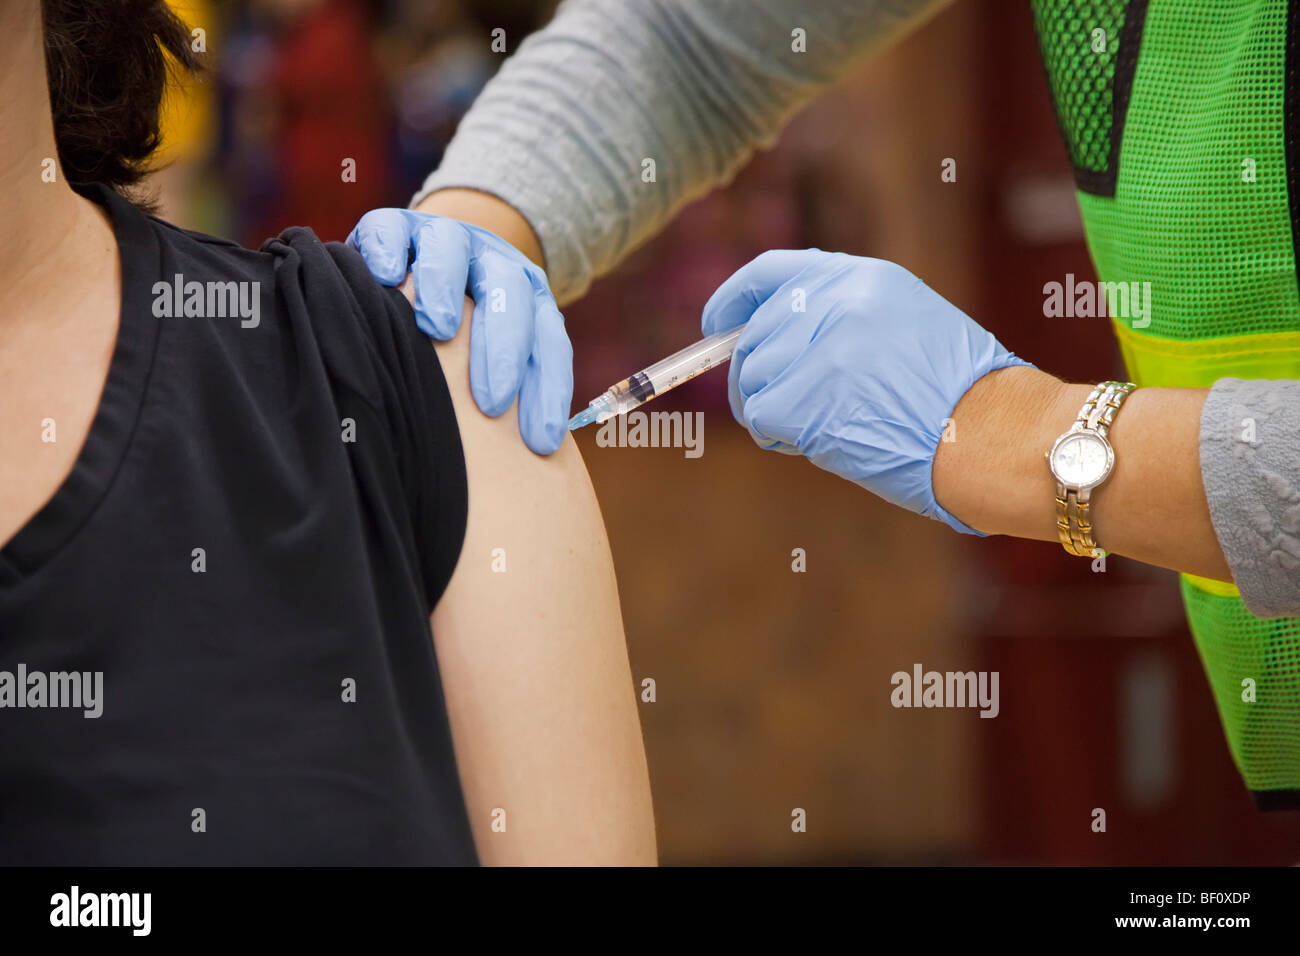 Hamtramck, au Michigan - un travailleur de la santé vaccine un résident de la région de Détroit contre le H1N1 de la grippe porcine. Banque D'Images